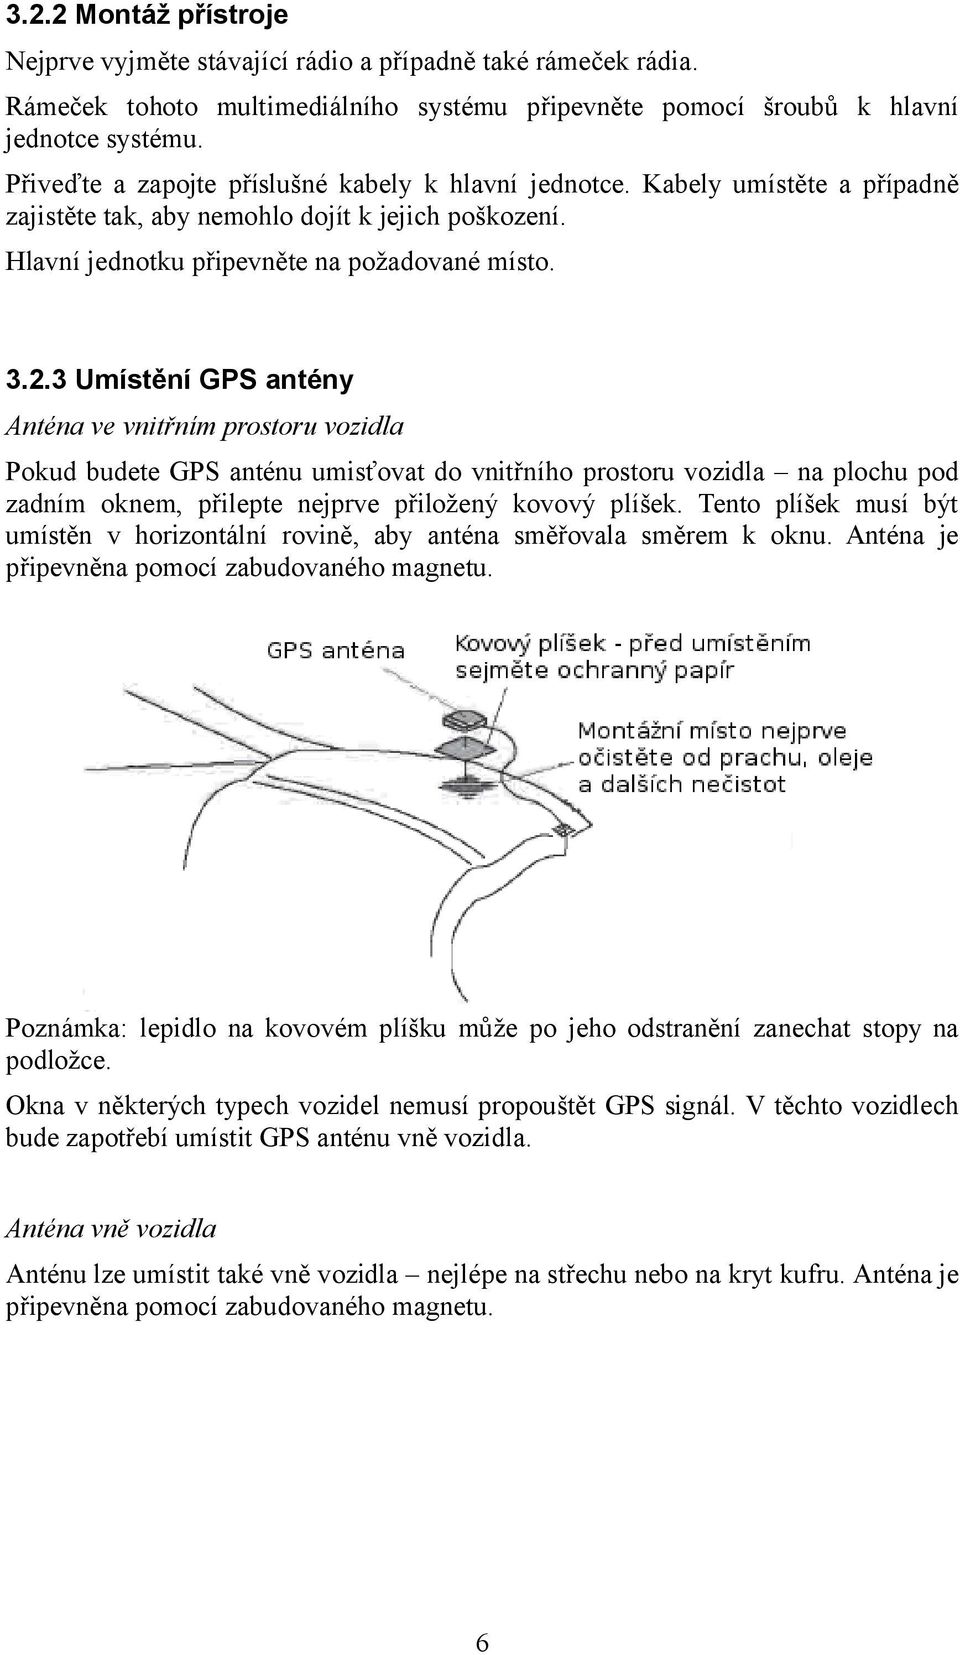 3 Umístění GPS antény Anténa ve vnitřním prostoru vozidla Pokud budete GPS anténu umisťovat do vnitřního prostoru vozidla na plochu pod zadním oknem, přilepte nejprve přiložený kovový plíšek.